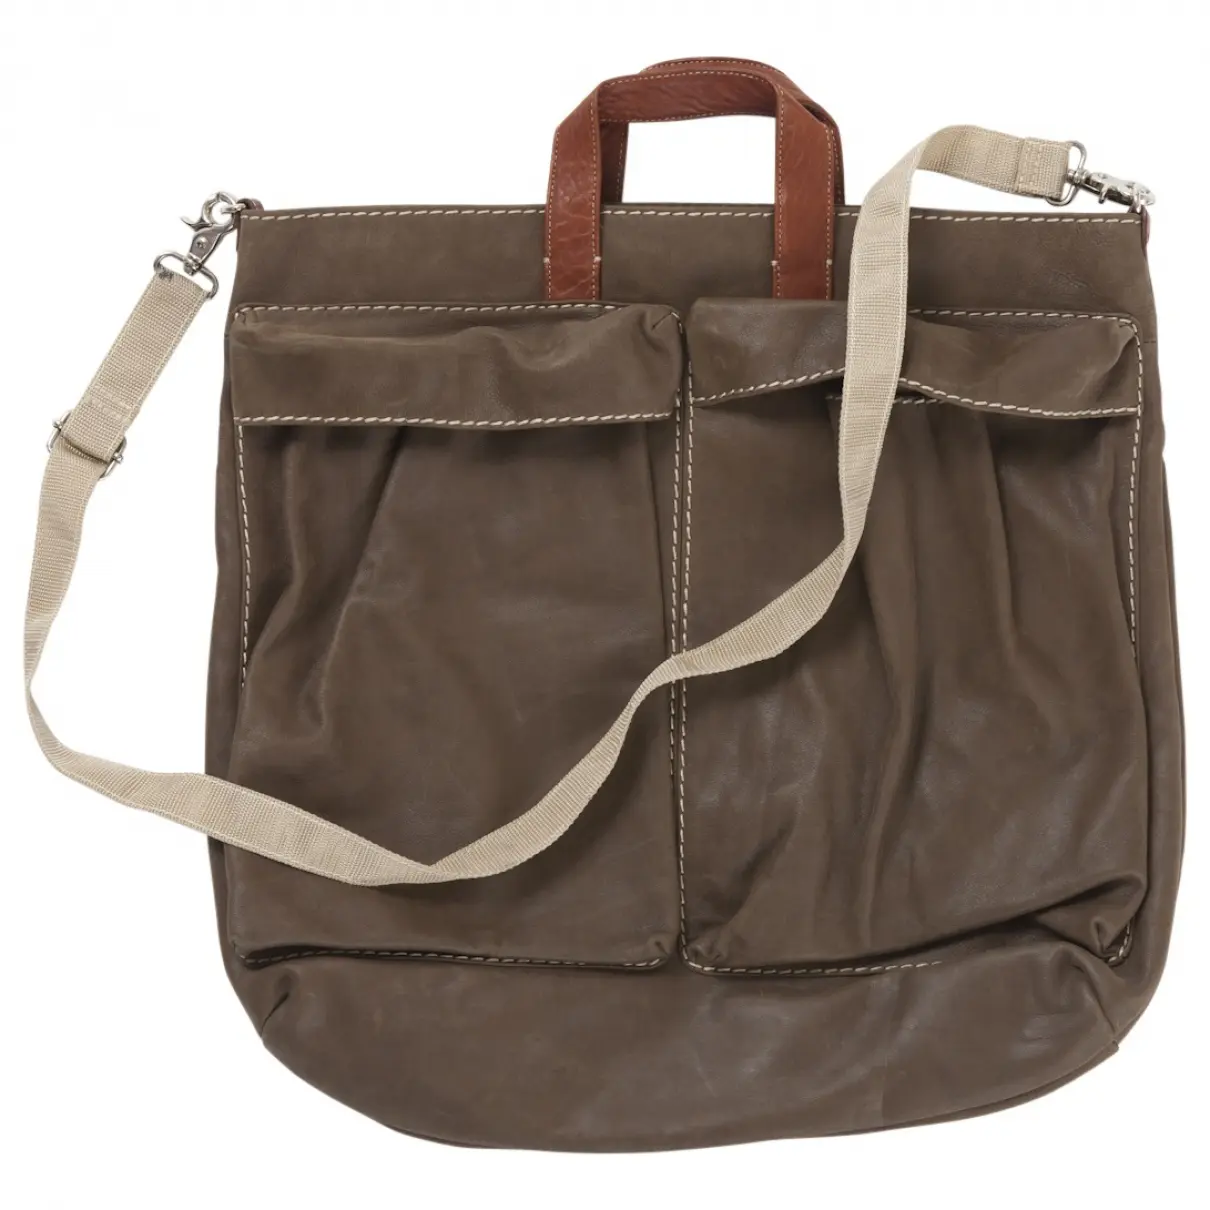 Carven Brown Leather Handbag for sale